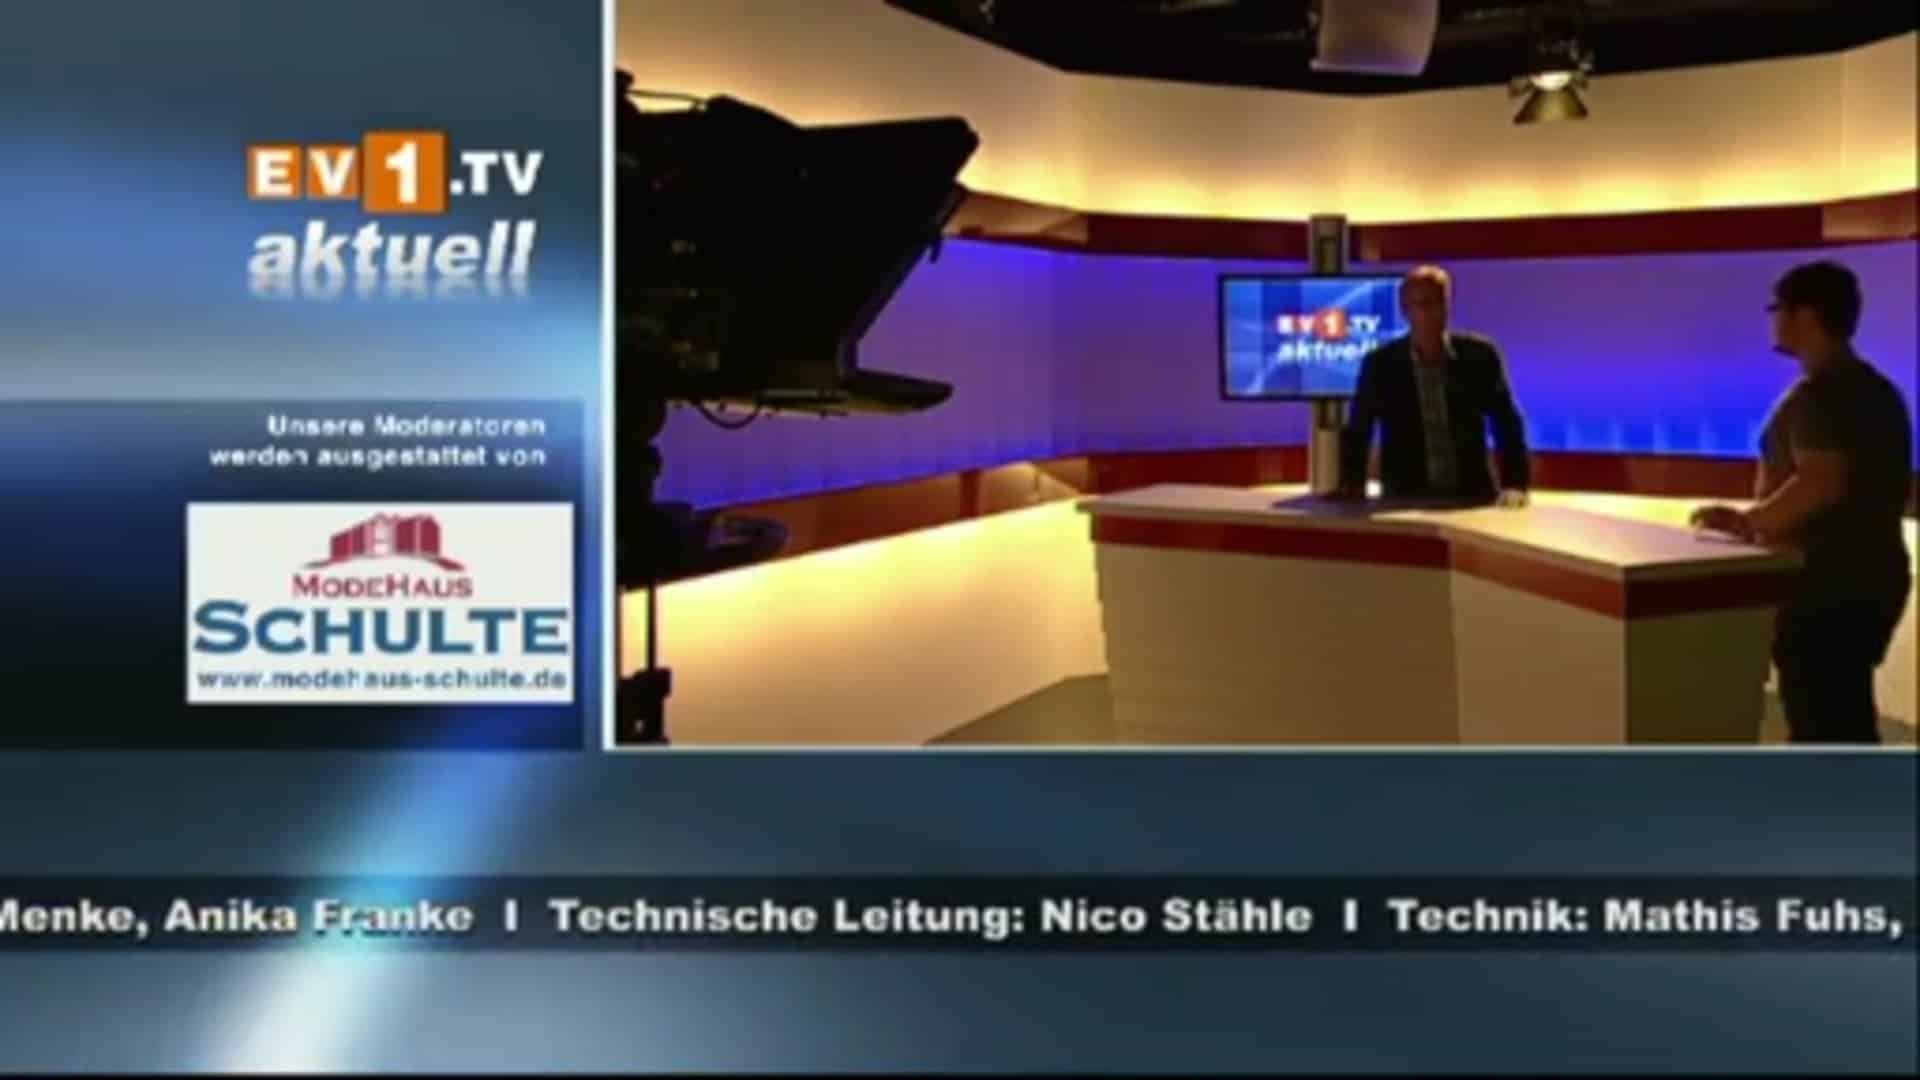 ev1.tv aktuell - 04.09